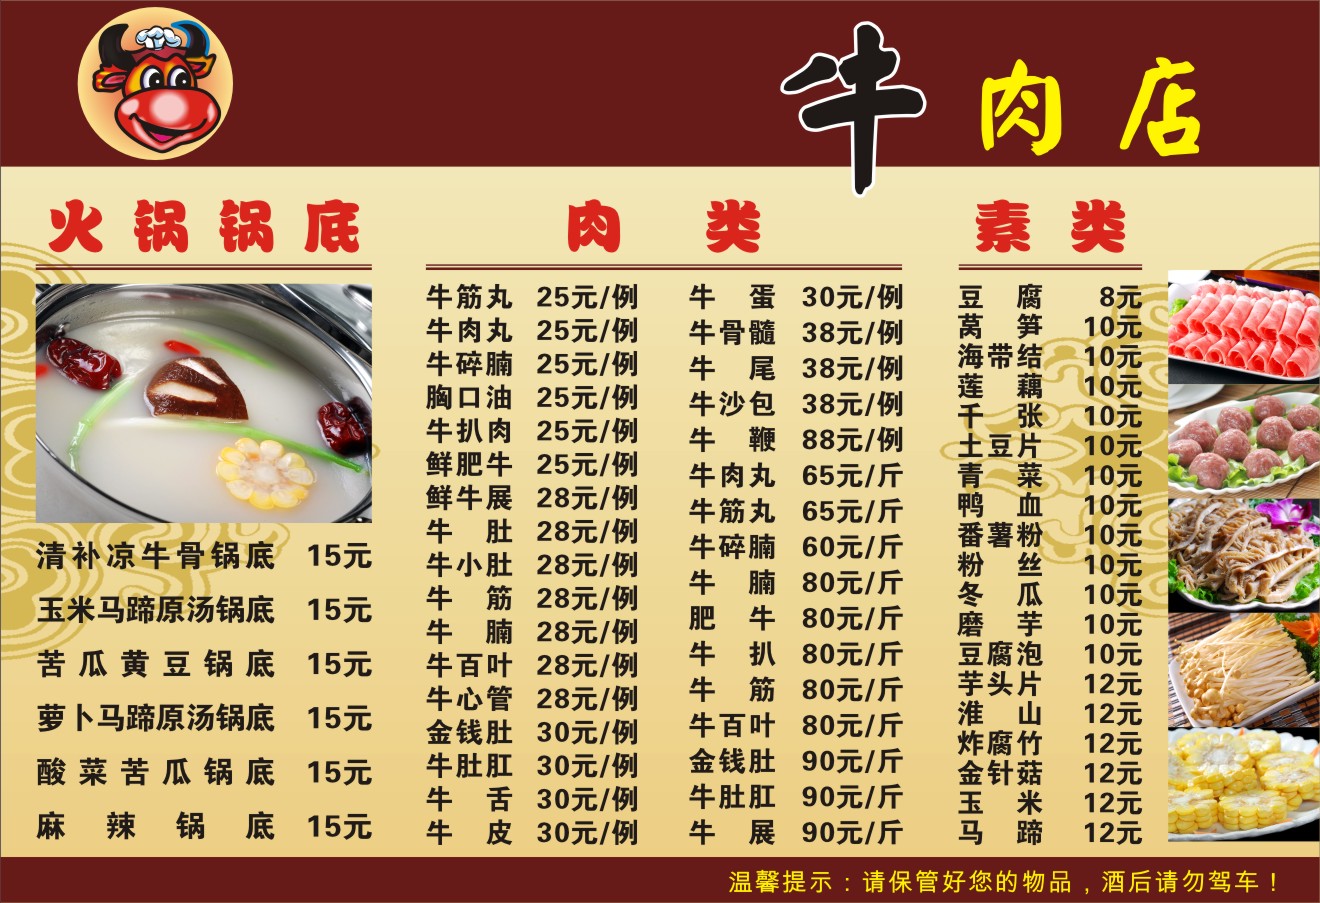 陈聚德牛肉馆菜单图片